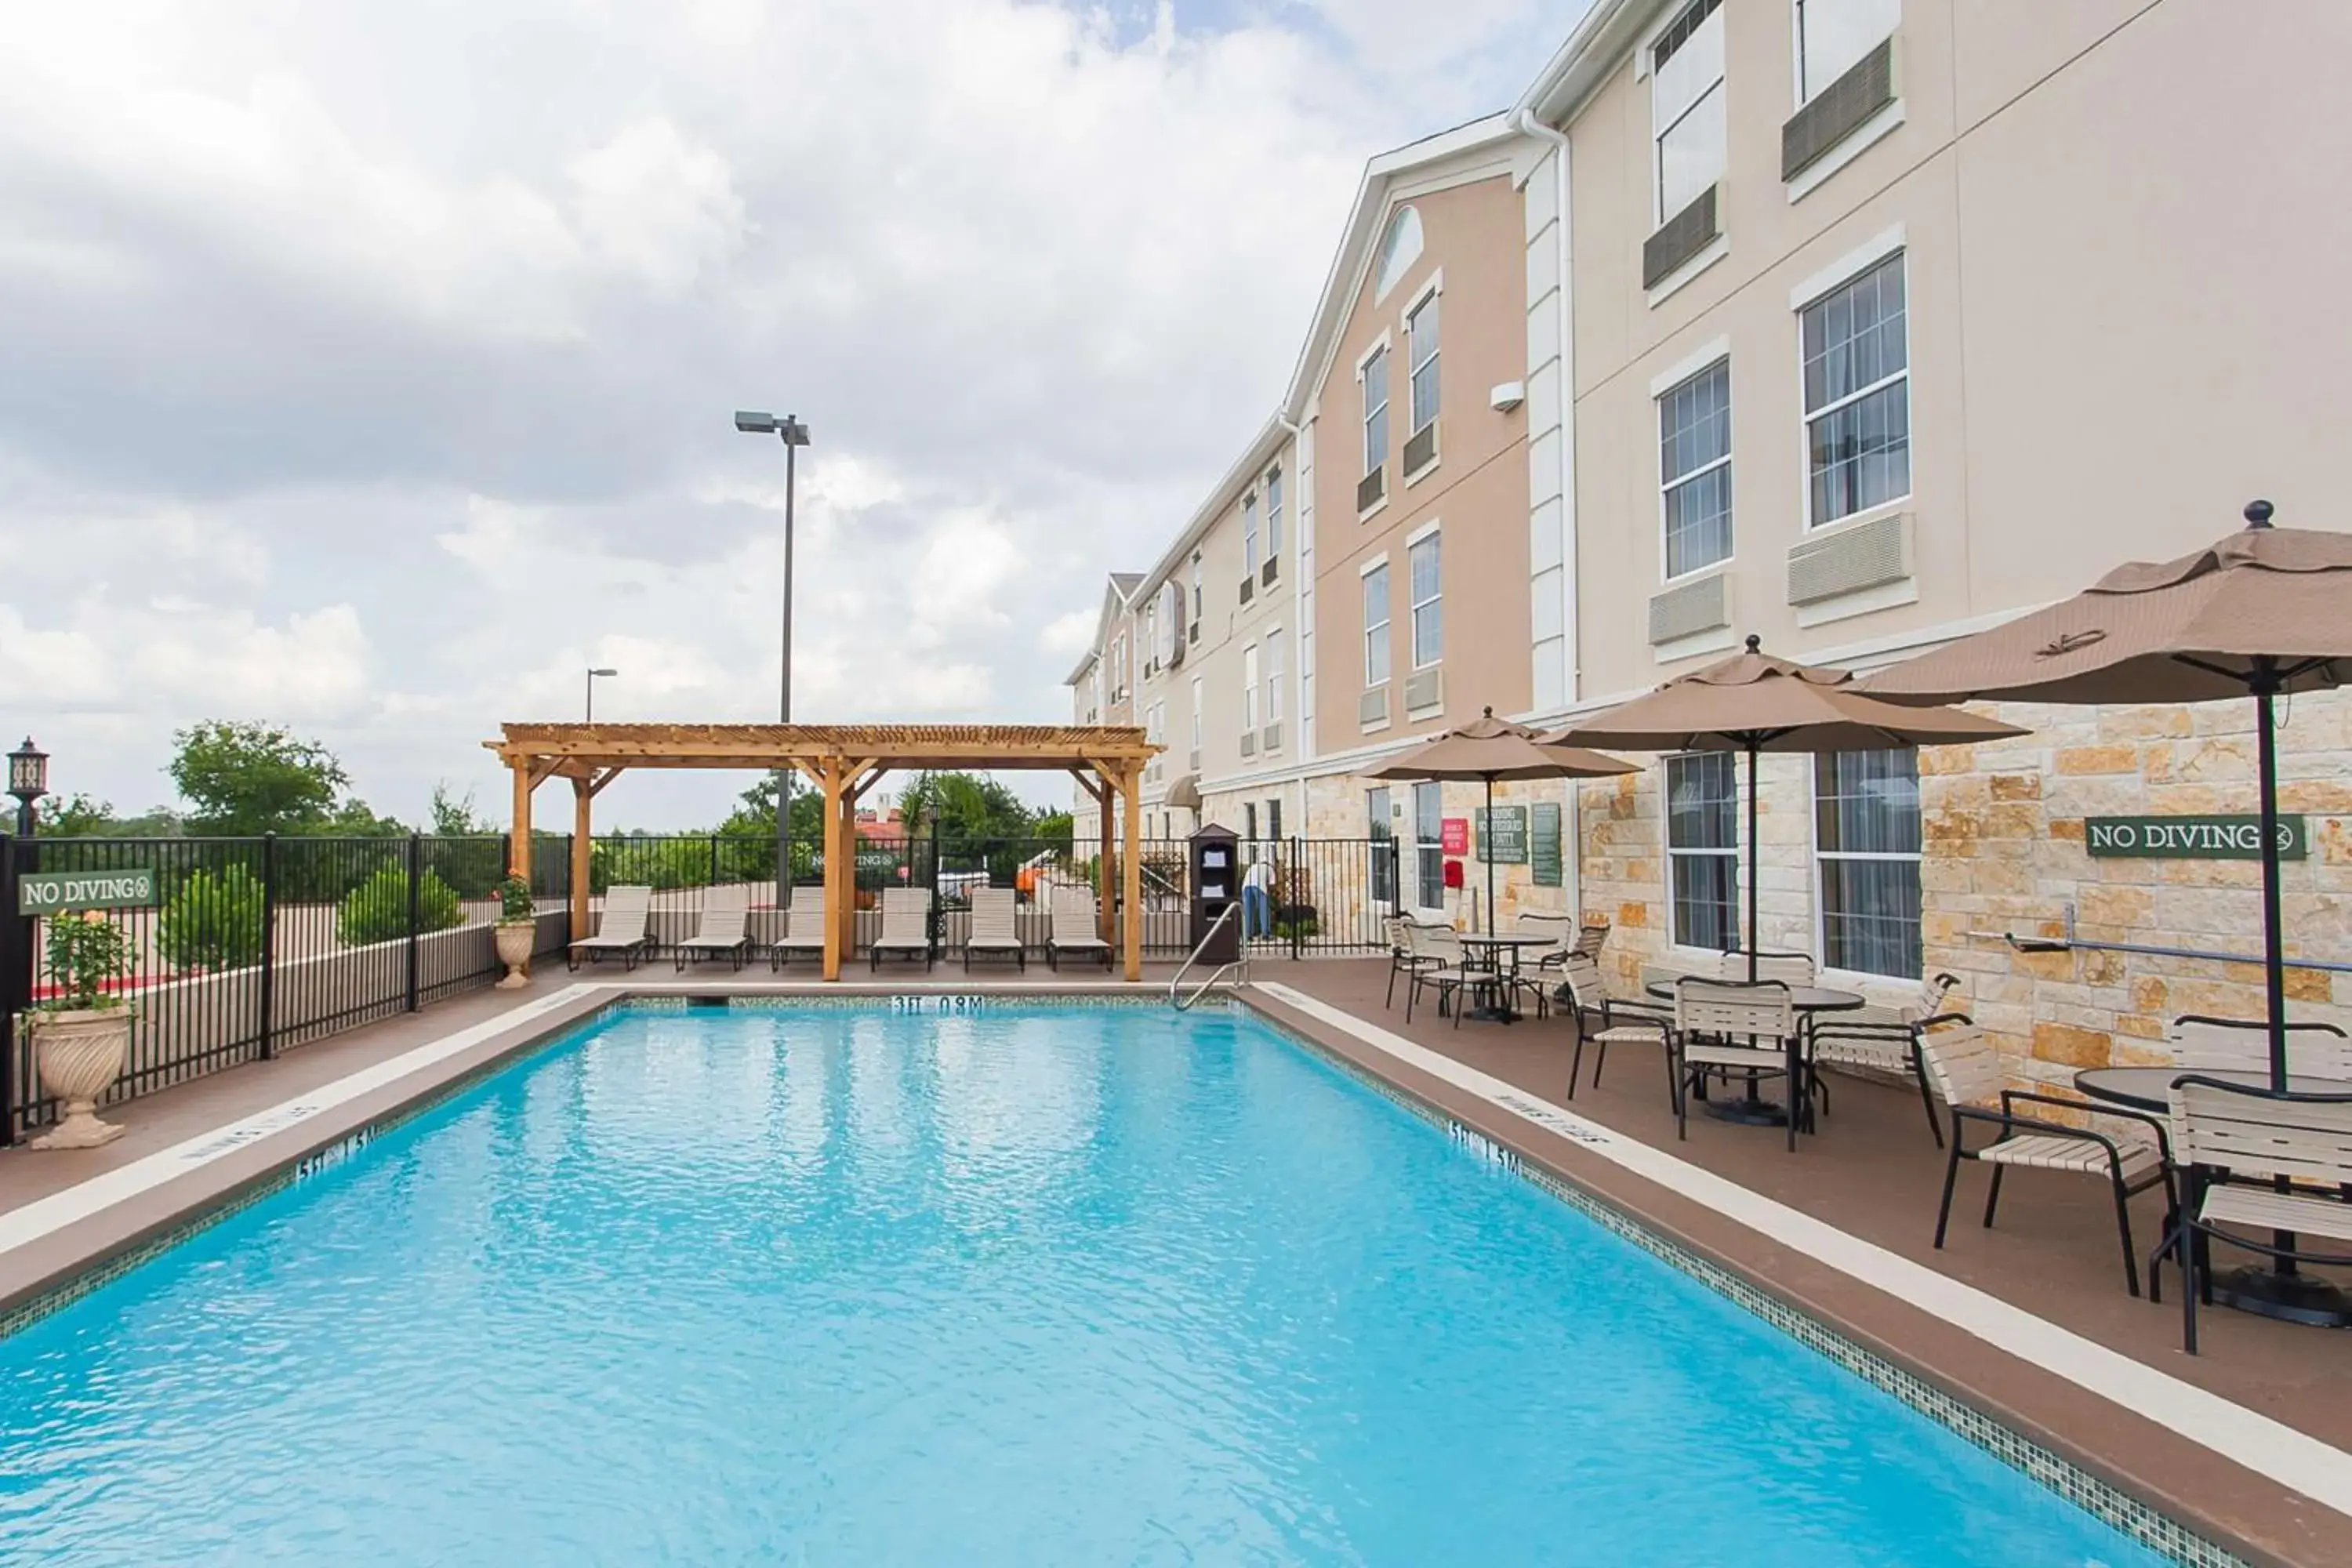 On site, Swimming Pool in Best Western Plus Georgetown Inn & Suites